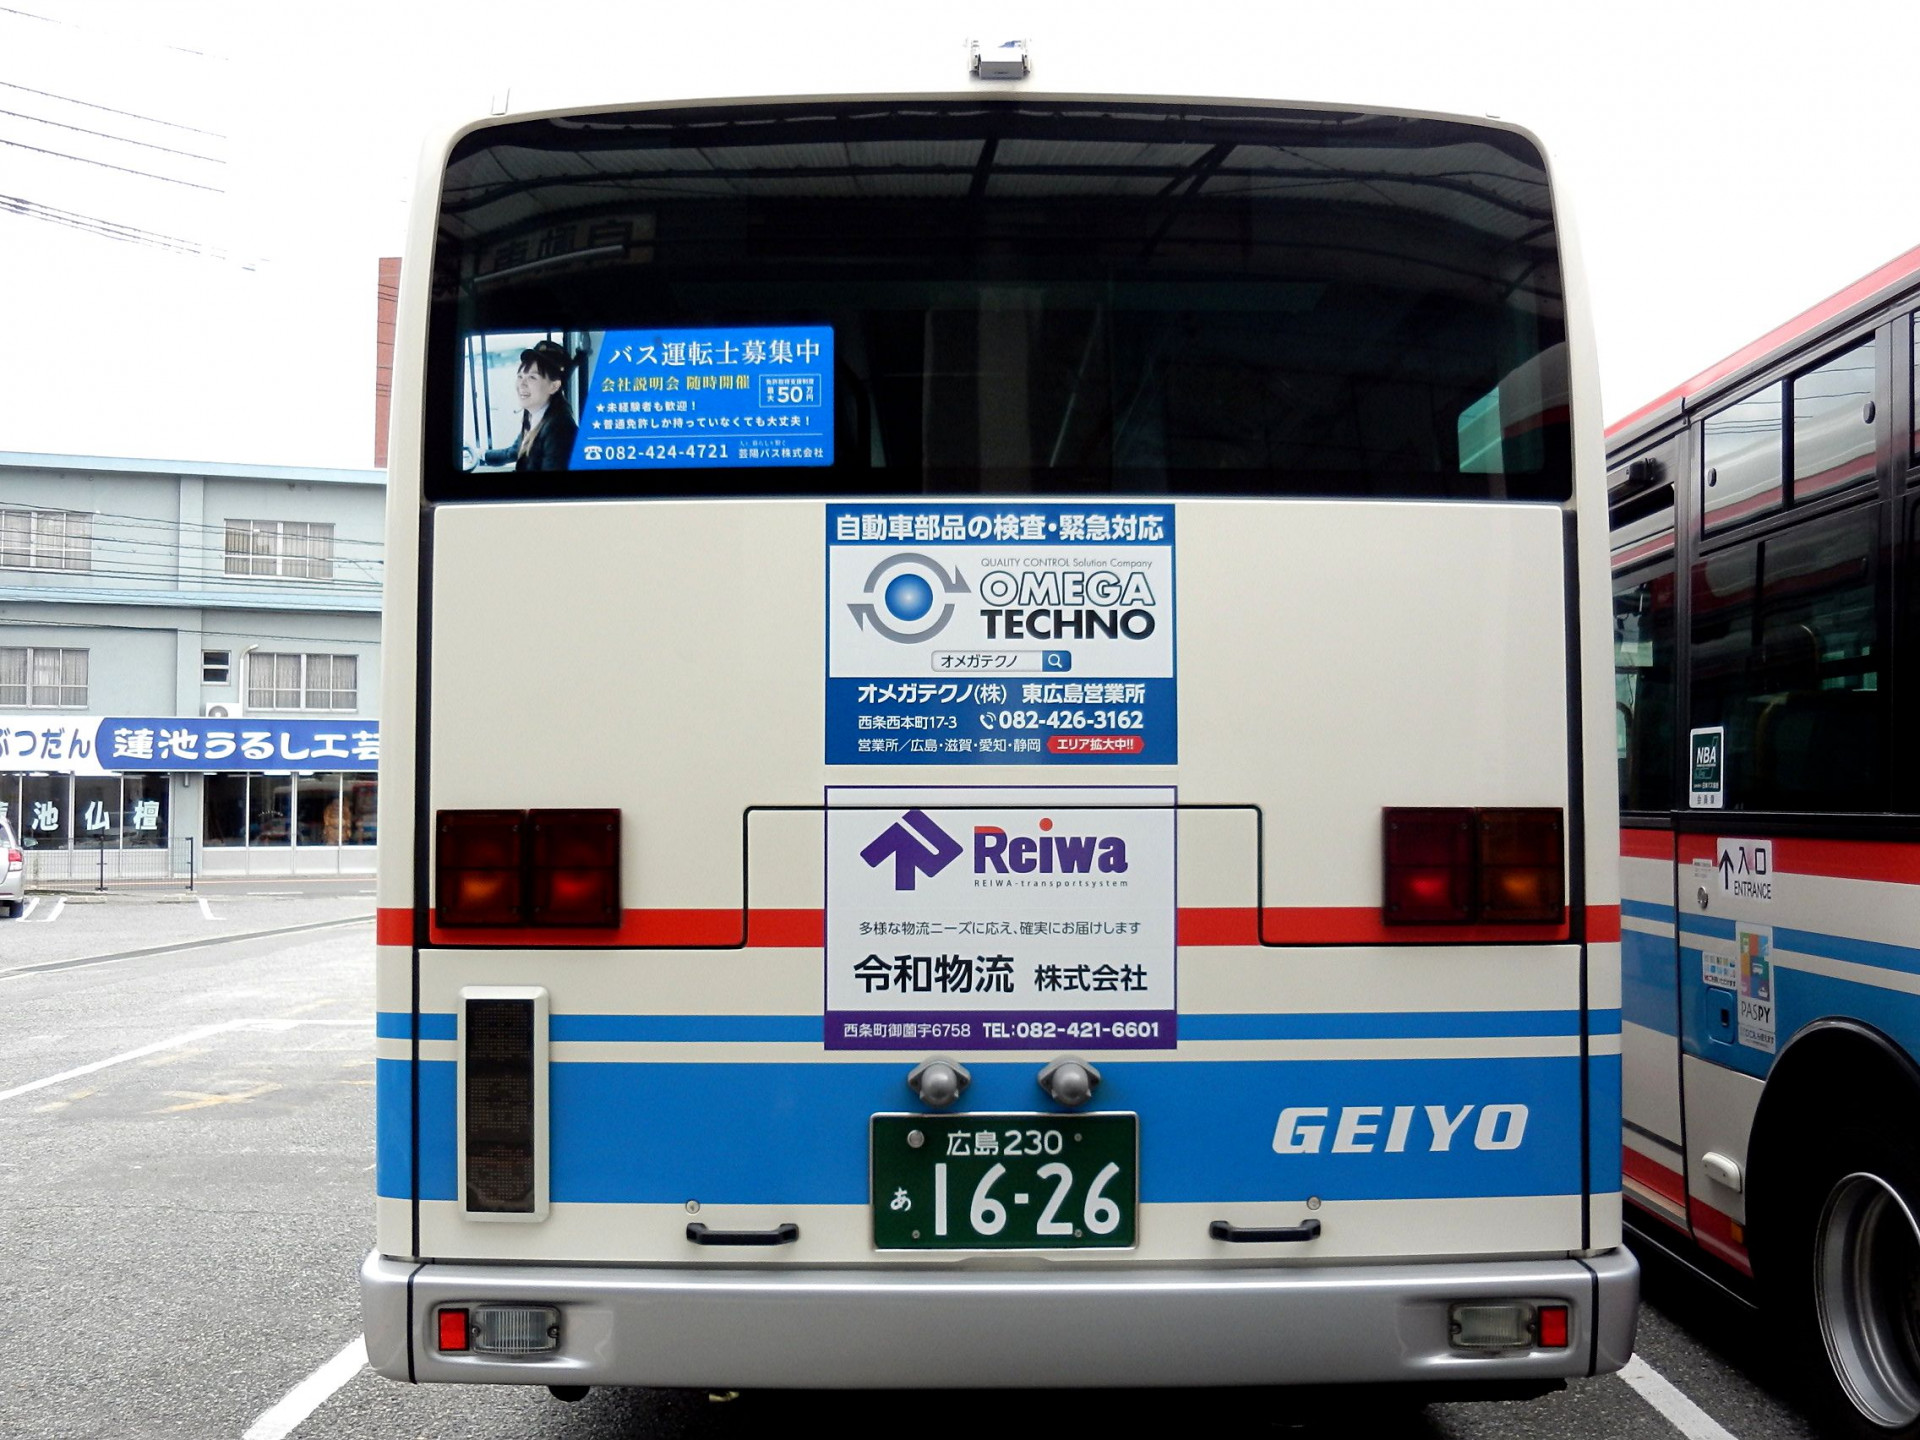 オメガテクノ広告バス【広島・芸陽バス】